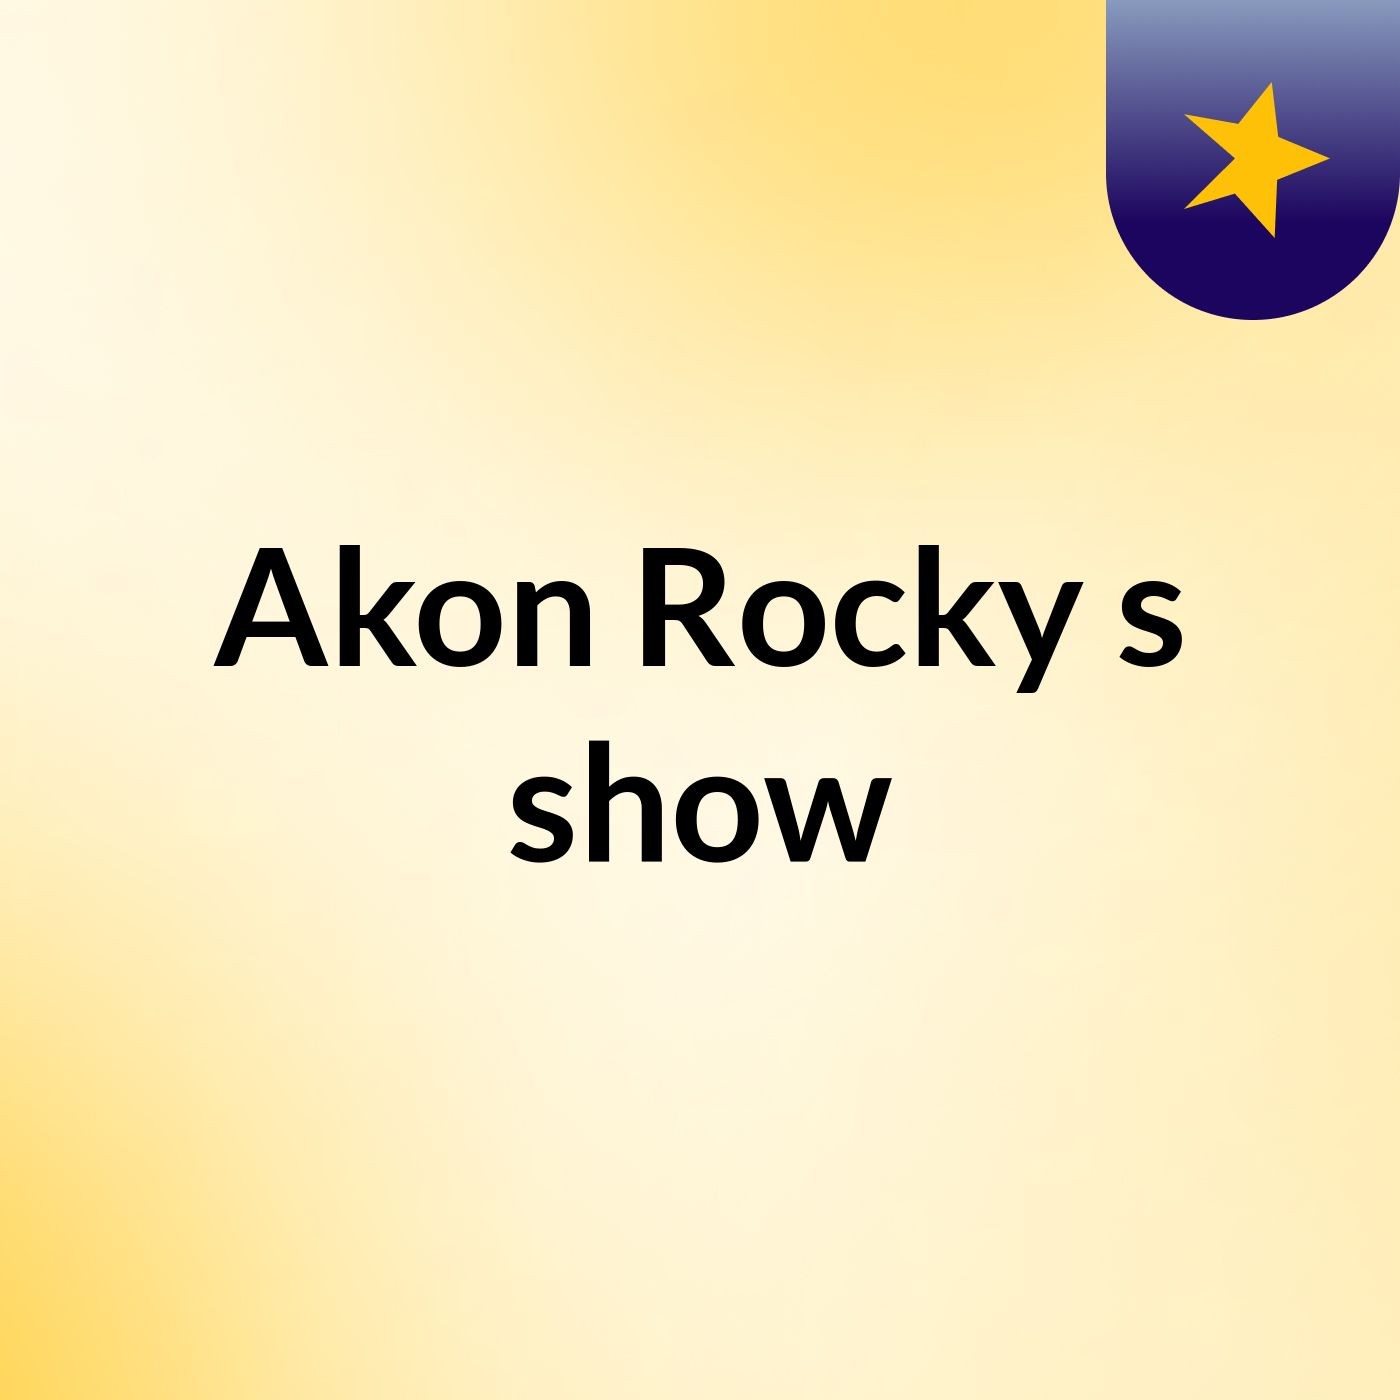 Akon Rocky's show